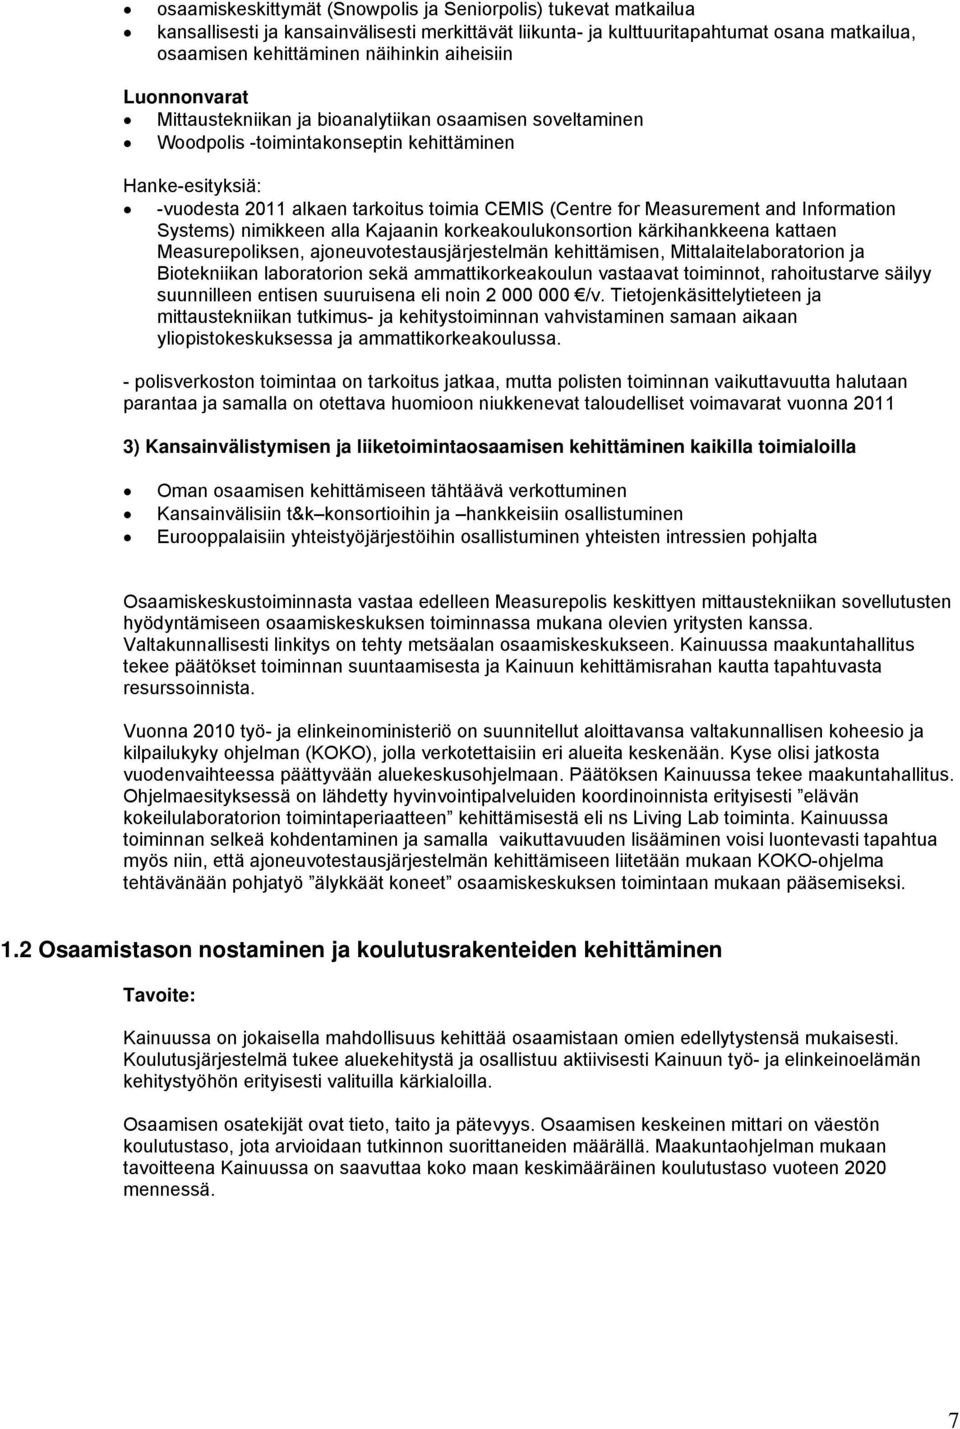 Measurement and Information Systems) nimikkeen alla Kajaanin korkeakoulukonsortion kärkihankkeena kattaen Measurepoliksen, ajoneuvotestausjärjestelmän kehittämisen, Mittalaitelaboratorion ja